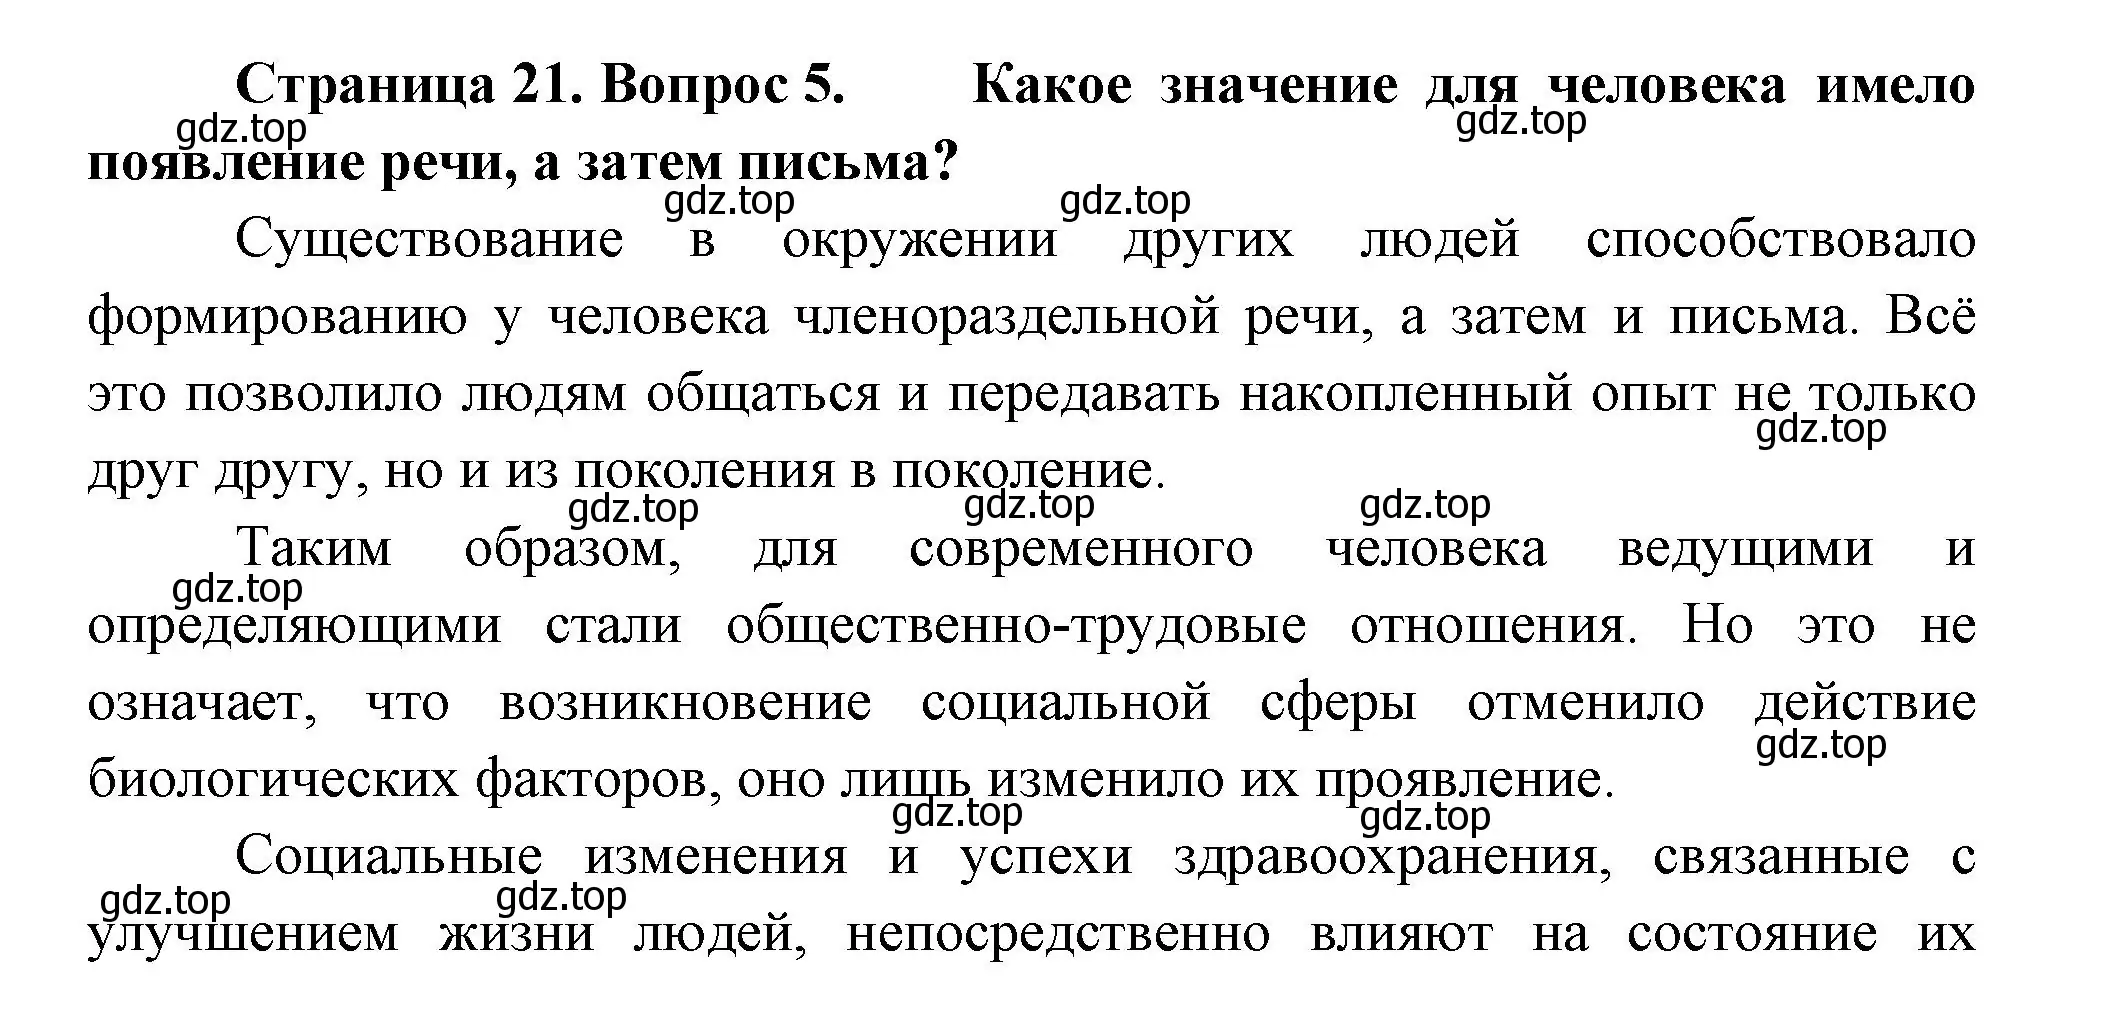 Решение номер 5 (страница 21) гдз по биологии 9 класс Пасечник, Каменский, учебник